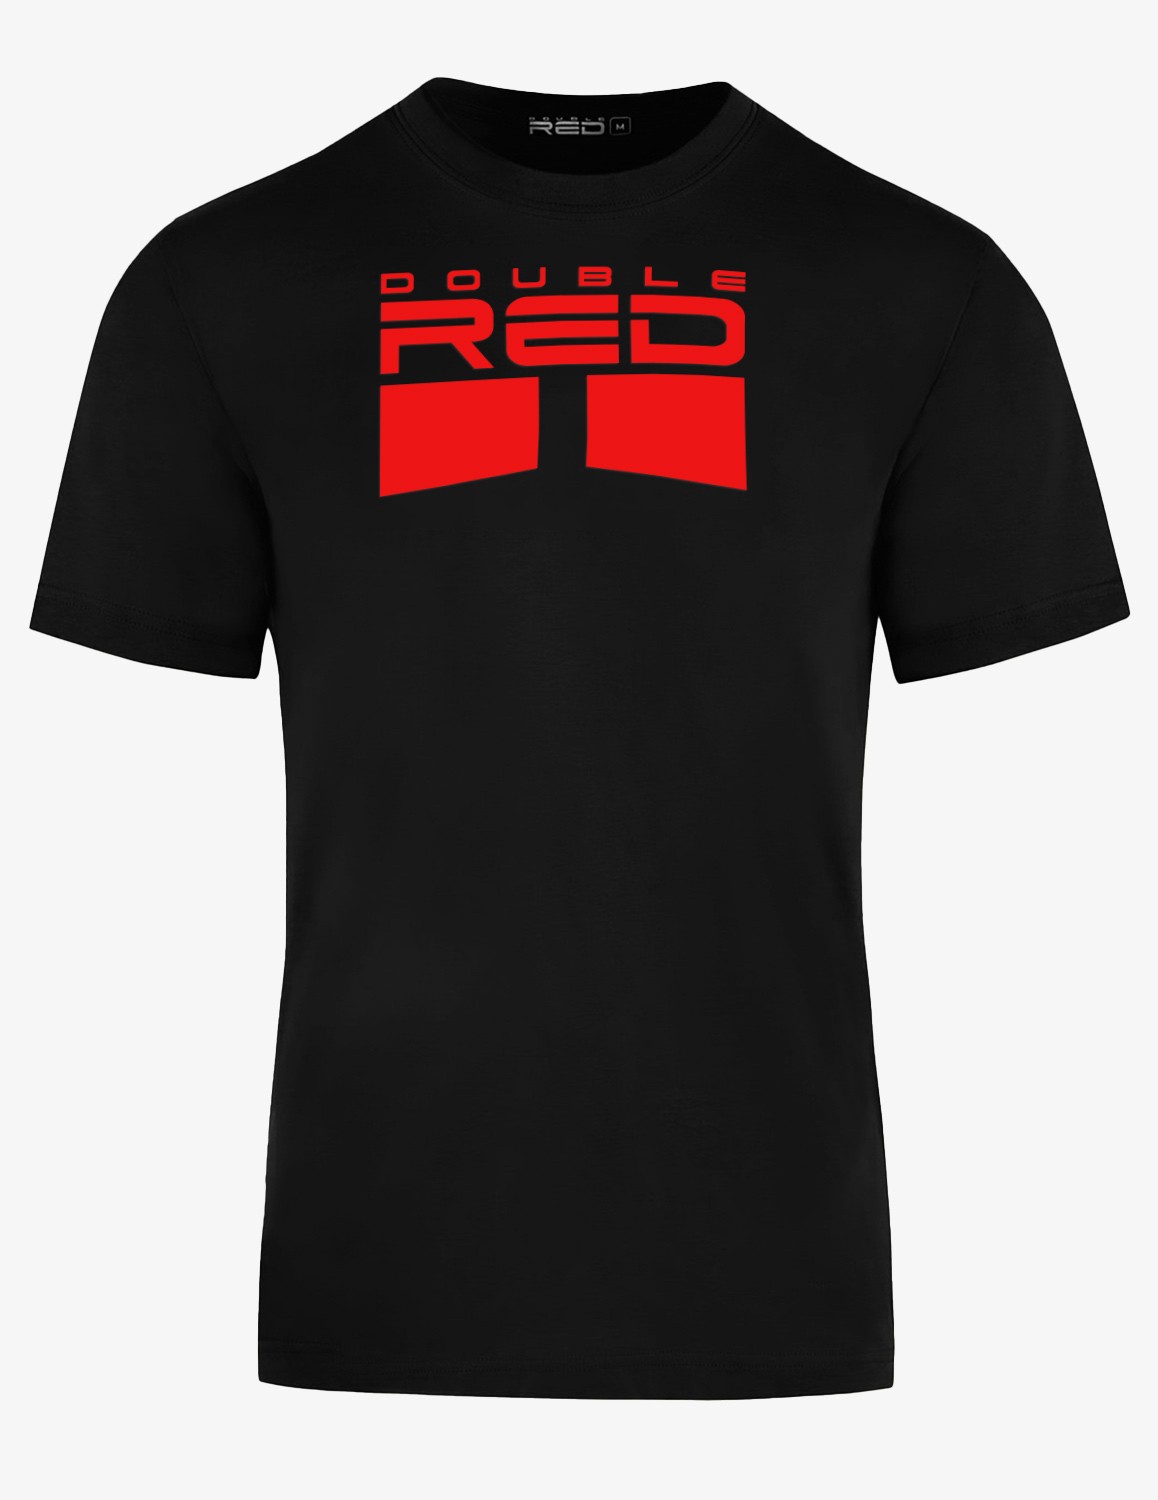 CARBONARO™ T-shirt Black/Red